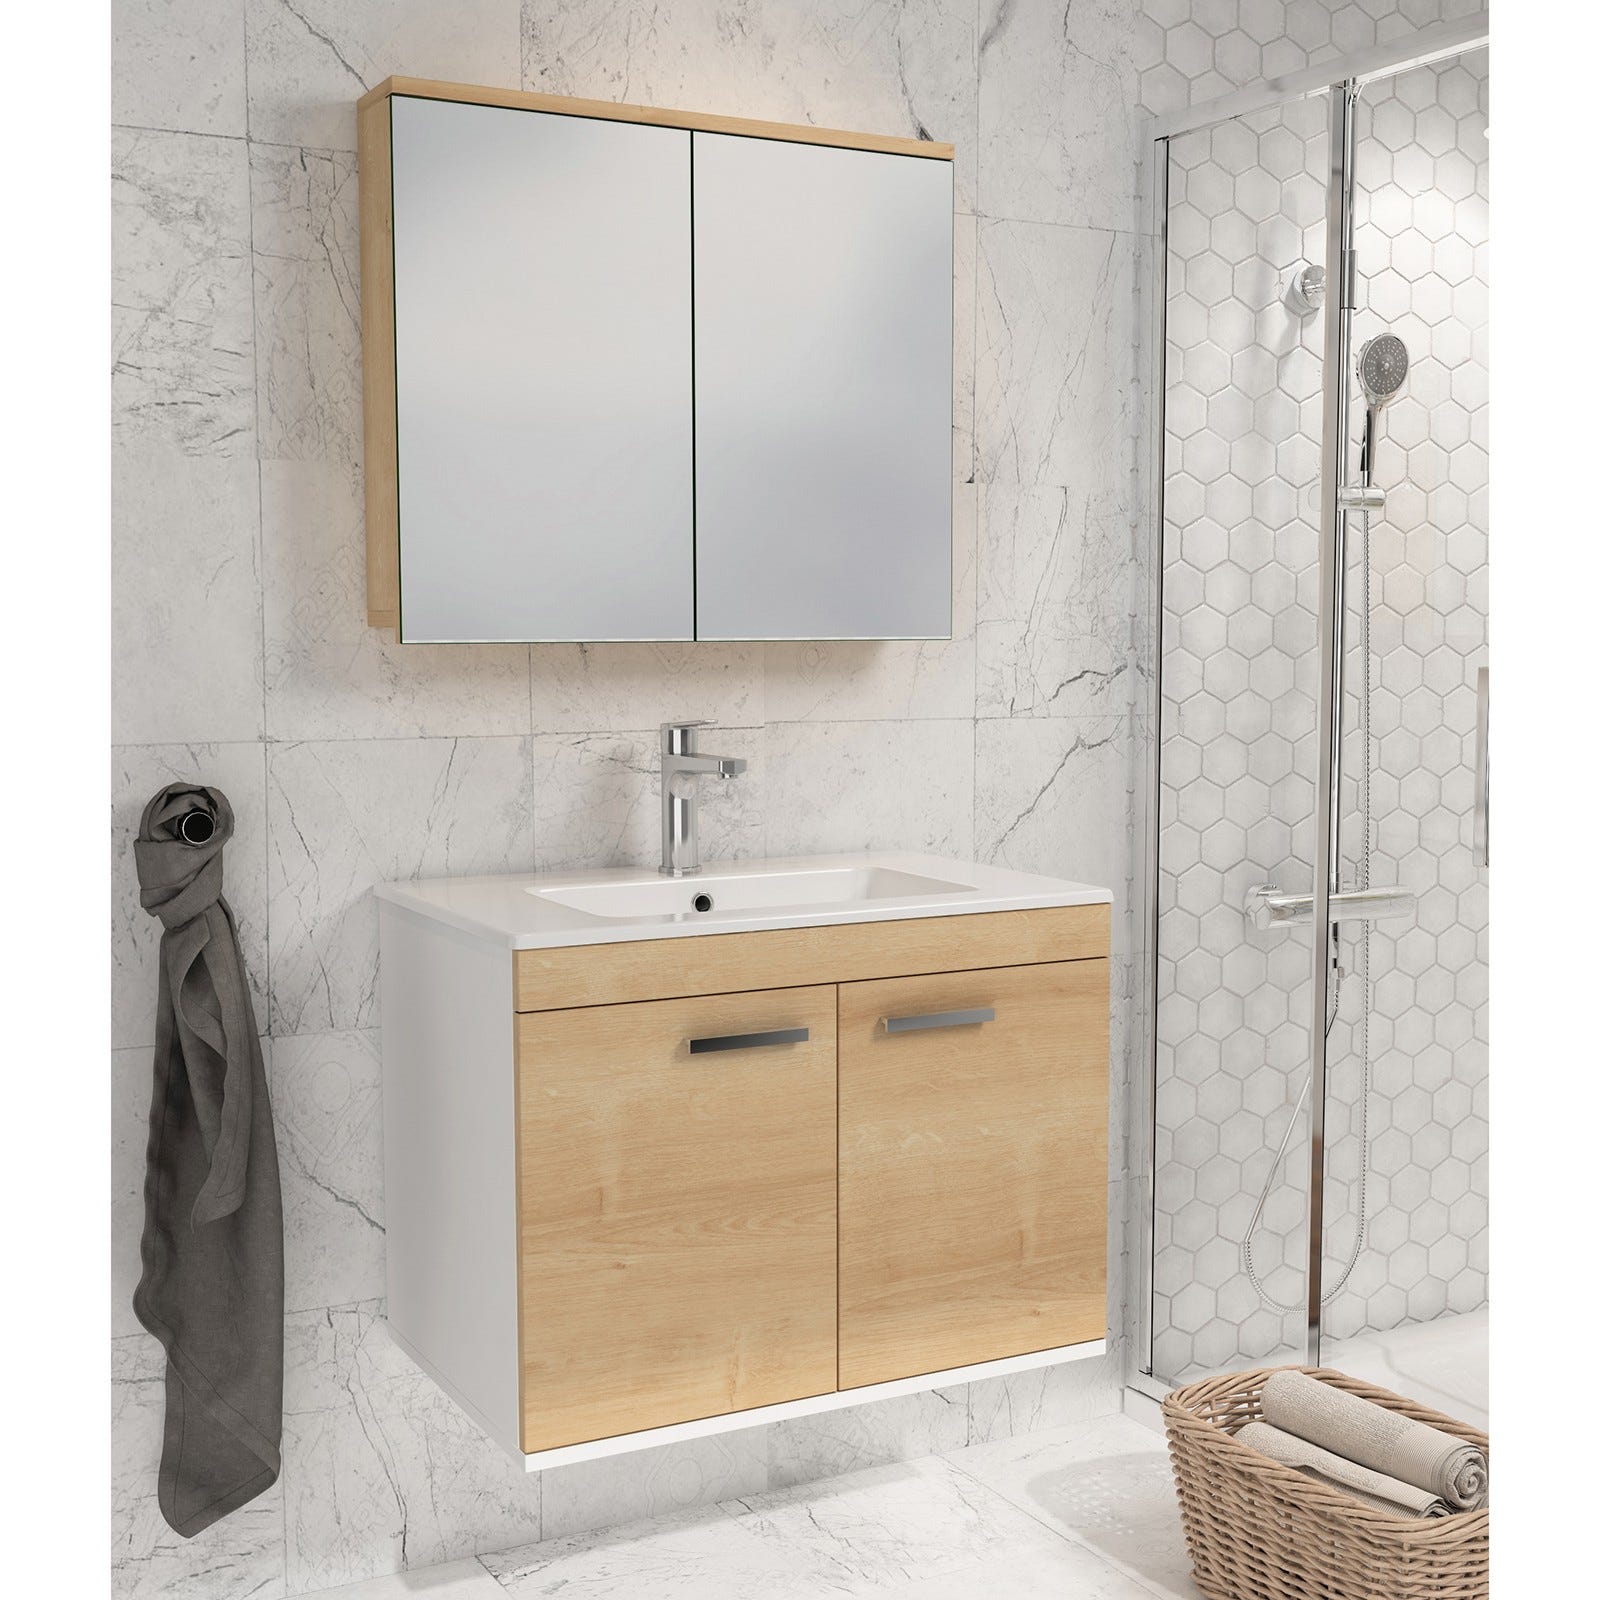 RUBITE Meuble salle de bain simple vasque 2 portes chêne clair largeur 90 cm + miroir armoire 4